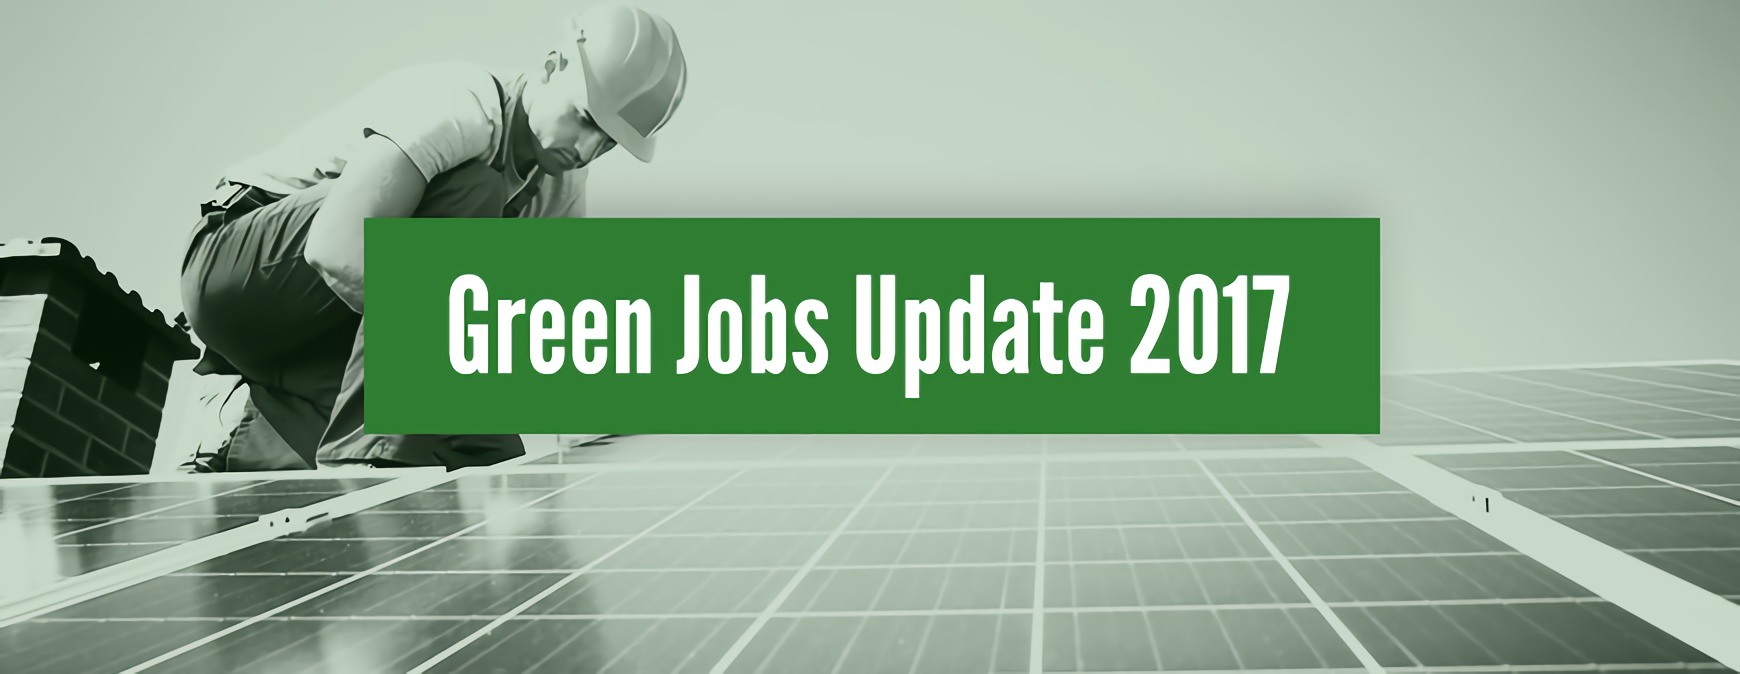 Green Jobs Update 2017 - Tulsa Welding School